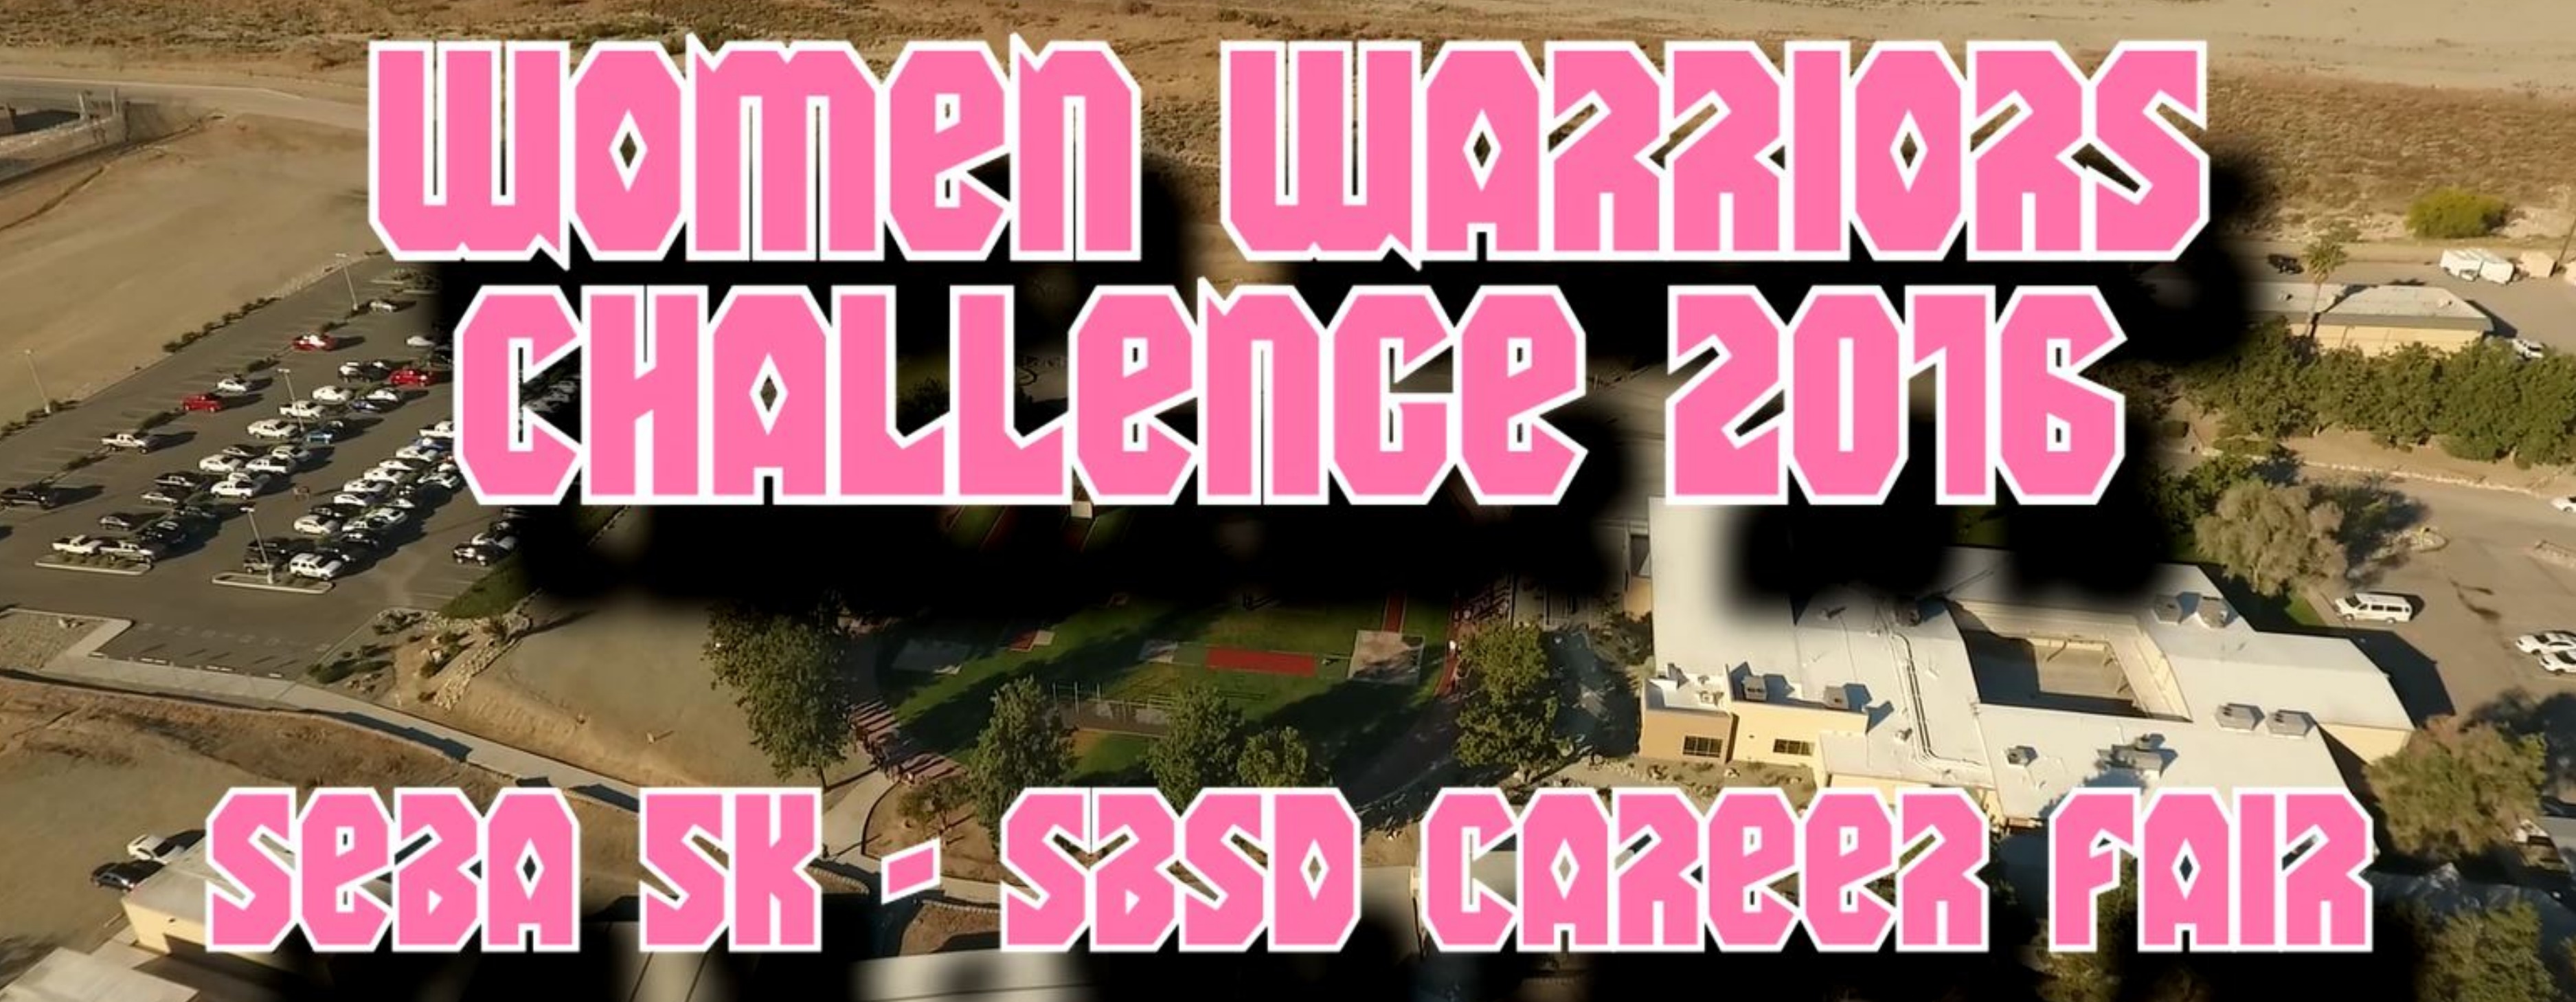 Women Warriors Challenge 2016